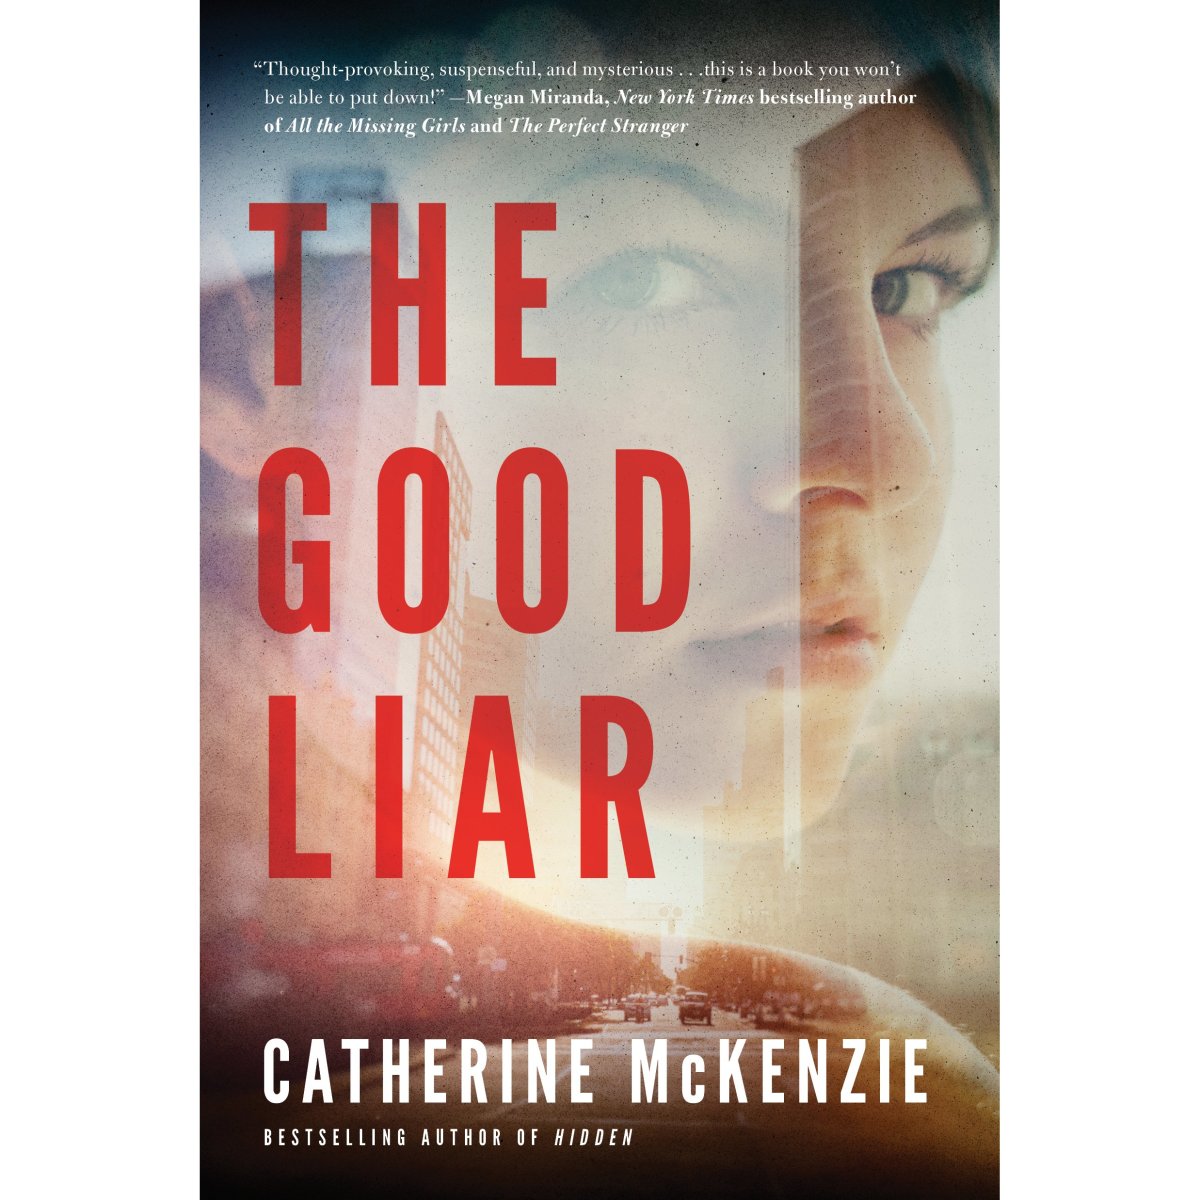                                                             The Good Liar by Catherine McKenzie